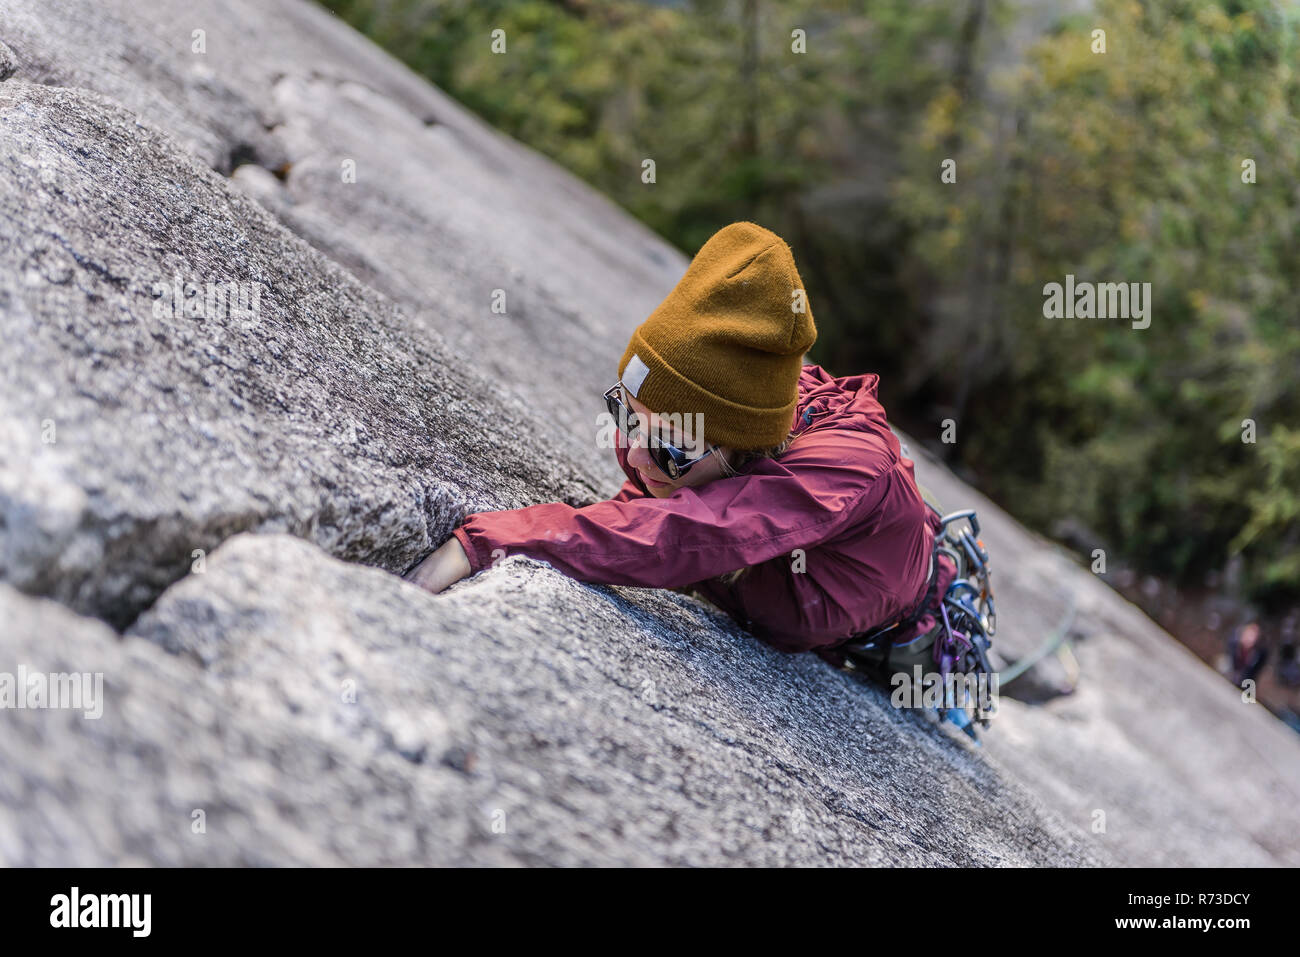 La préhension des grimpeurs sur les fissures, Malamute, Squamish, Canada Banque D'Images